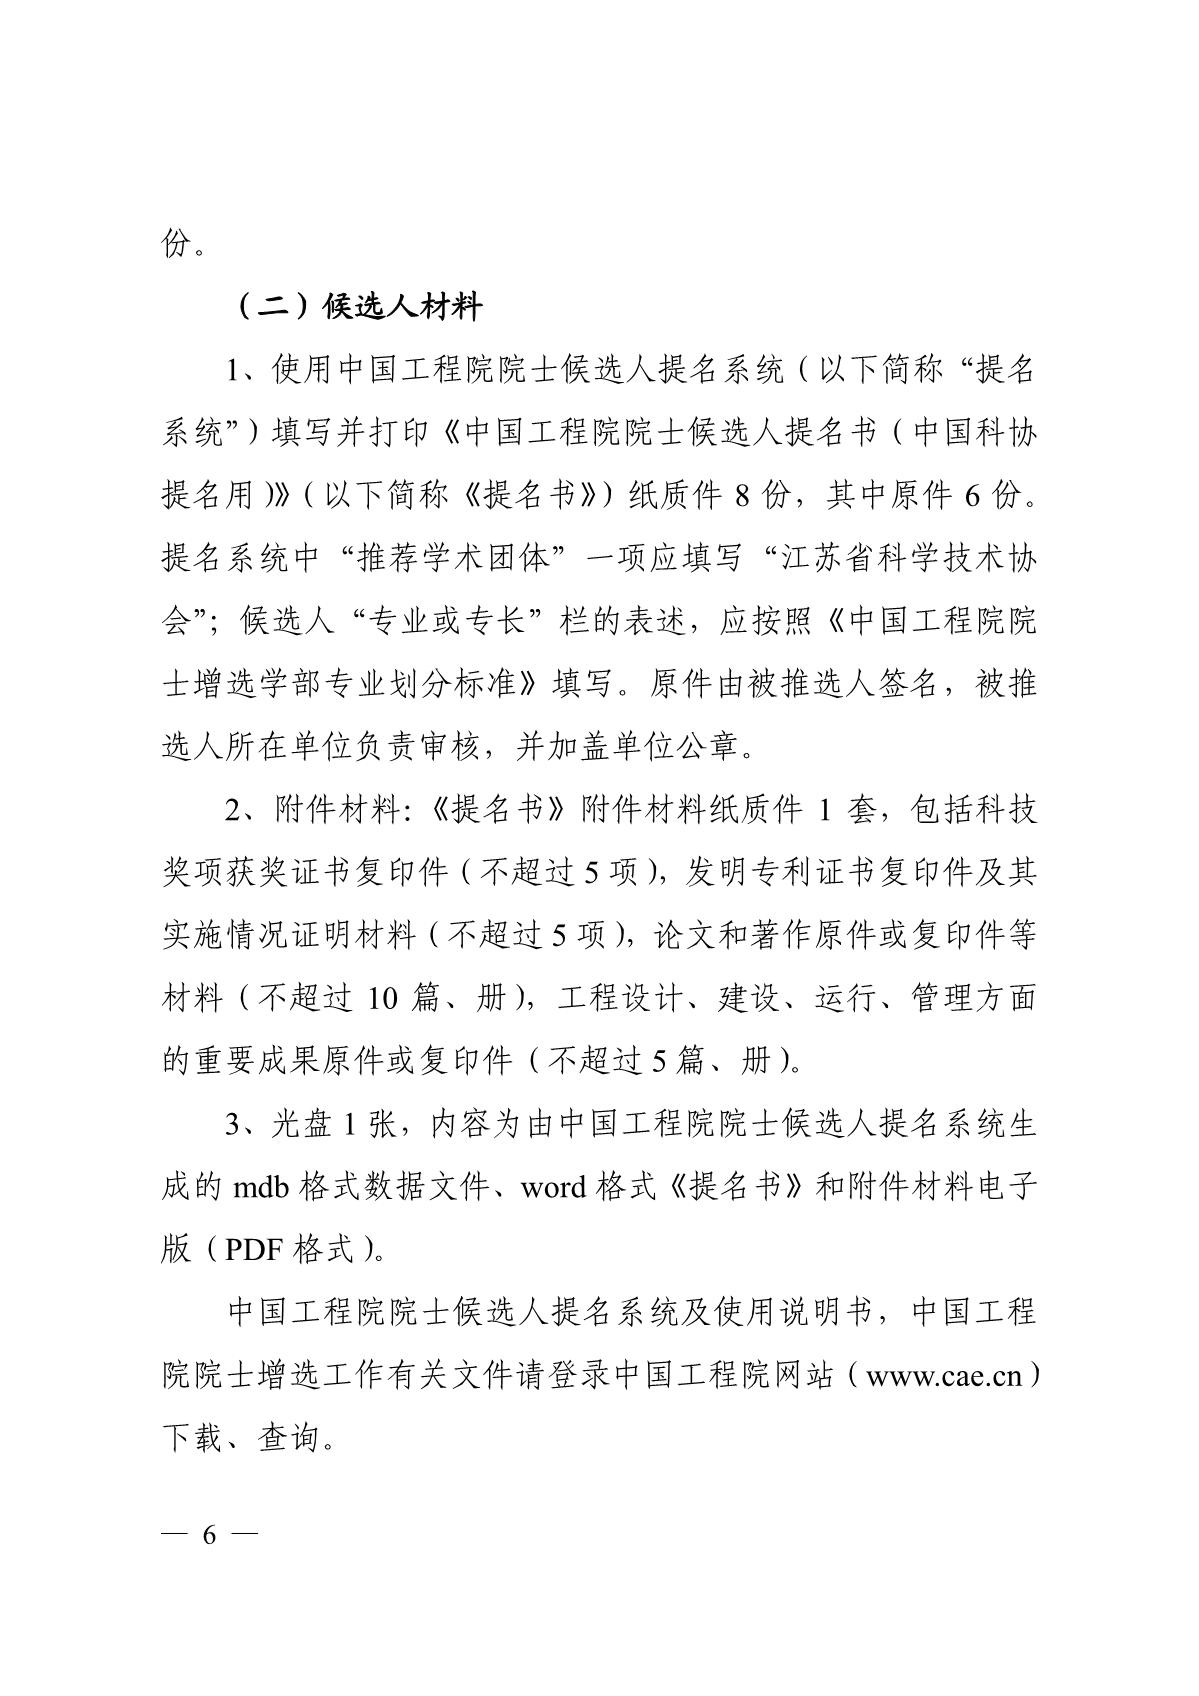 关于组织推选2021年中国工程院院士候选人的通知_6.JPG